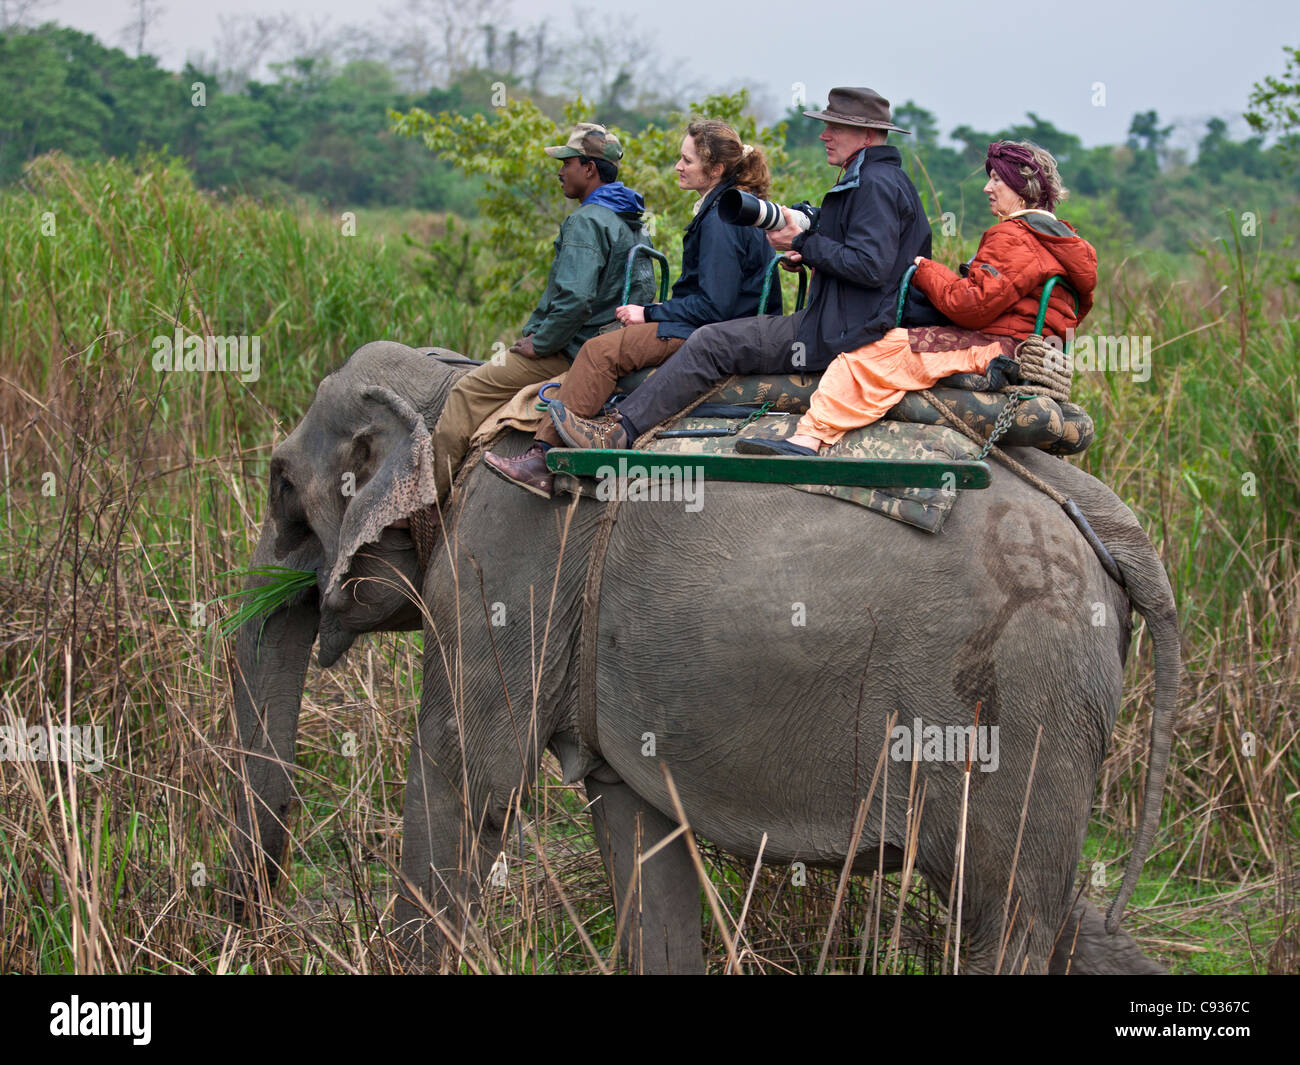 Les touristes à cheval un éléphant rechercher d'Indien Grand rhinocéros à une corne et autres animaux sauvages dans les hautes herbes de marais. Banque D'Images